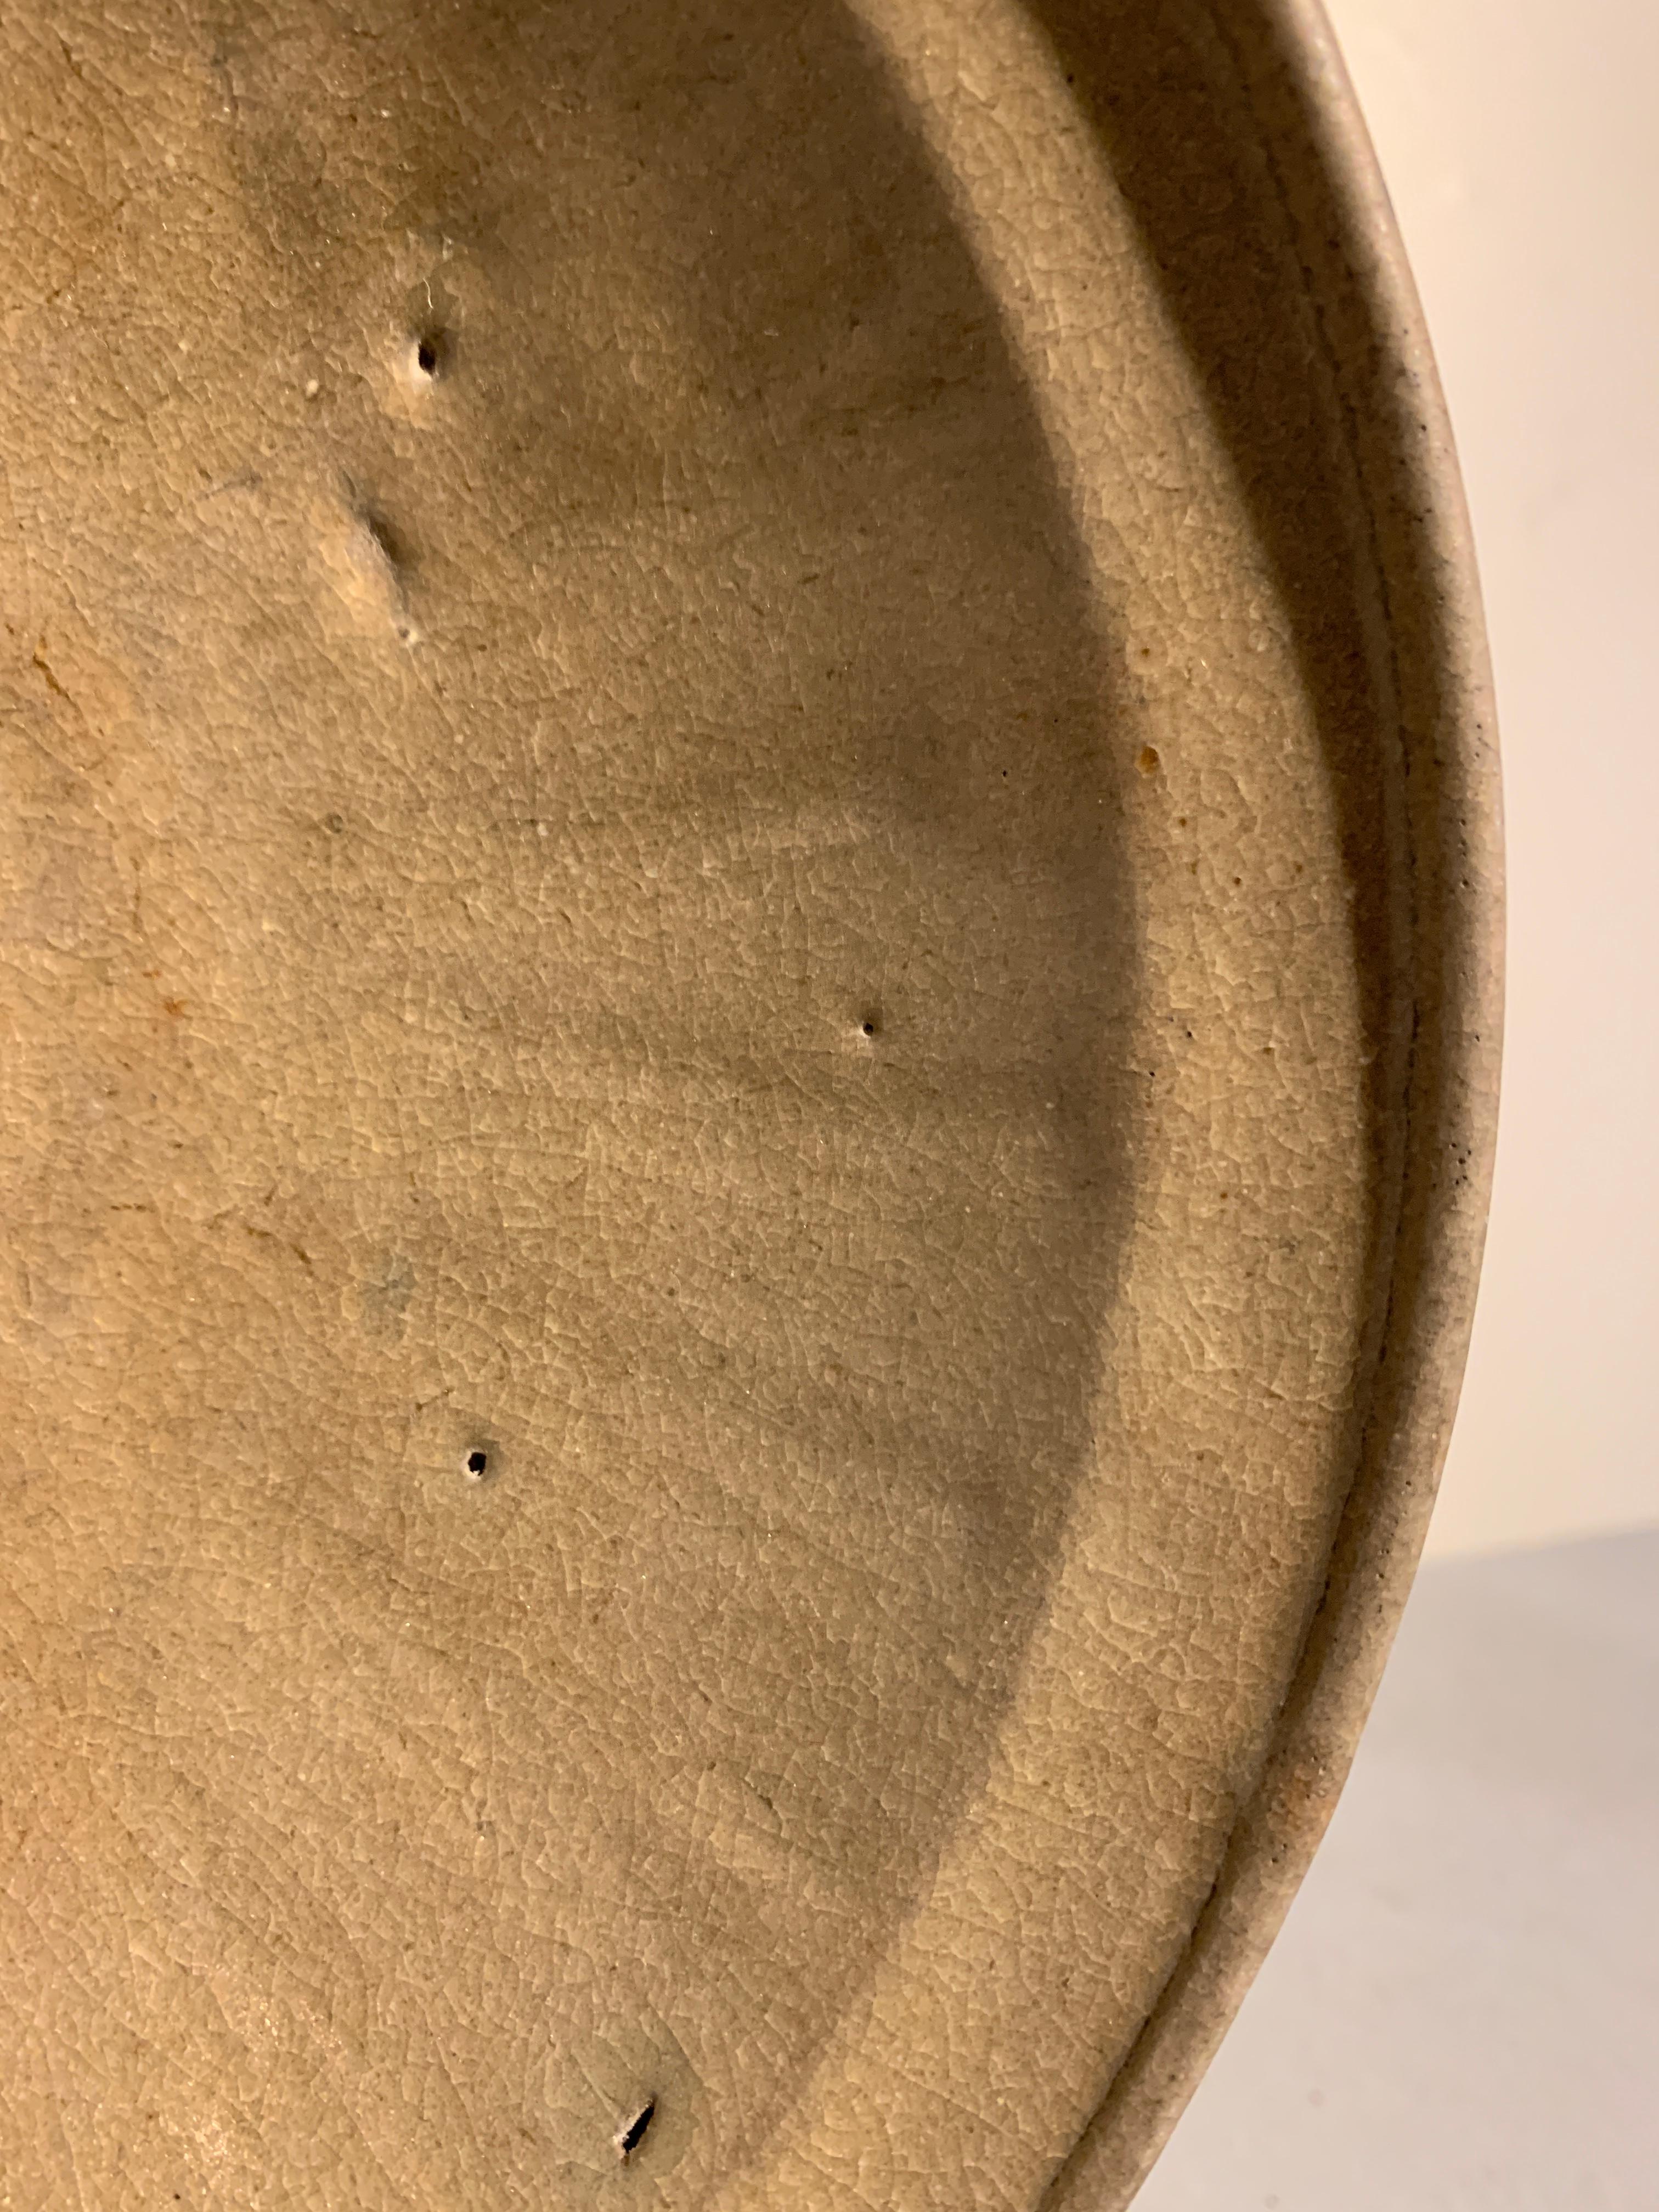 Stoneware Korean Goryeo Dynasty Celadon Glazed Dish, 12th-14th Century, Korea